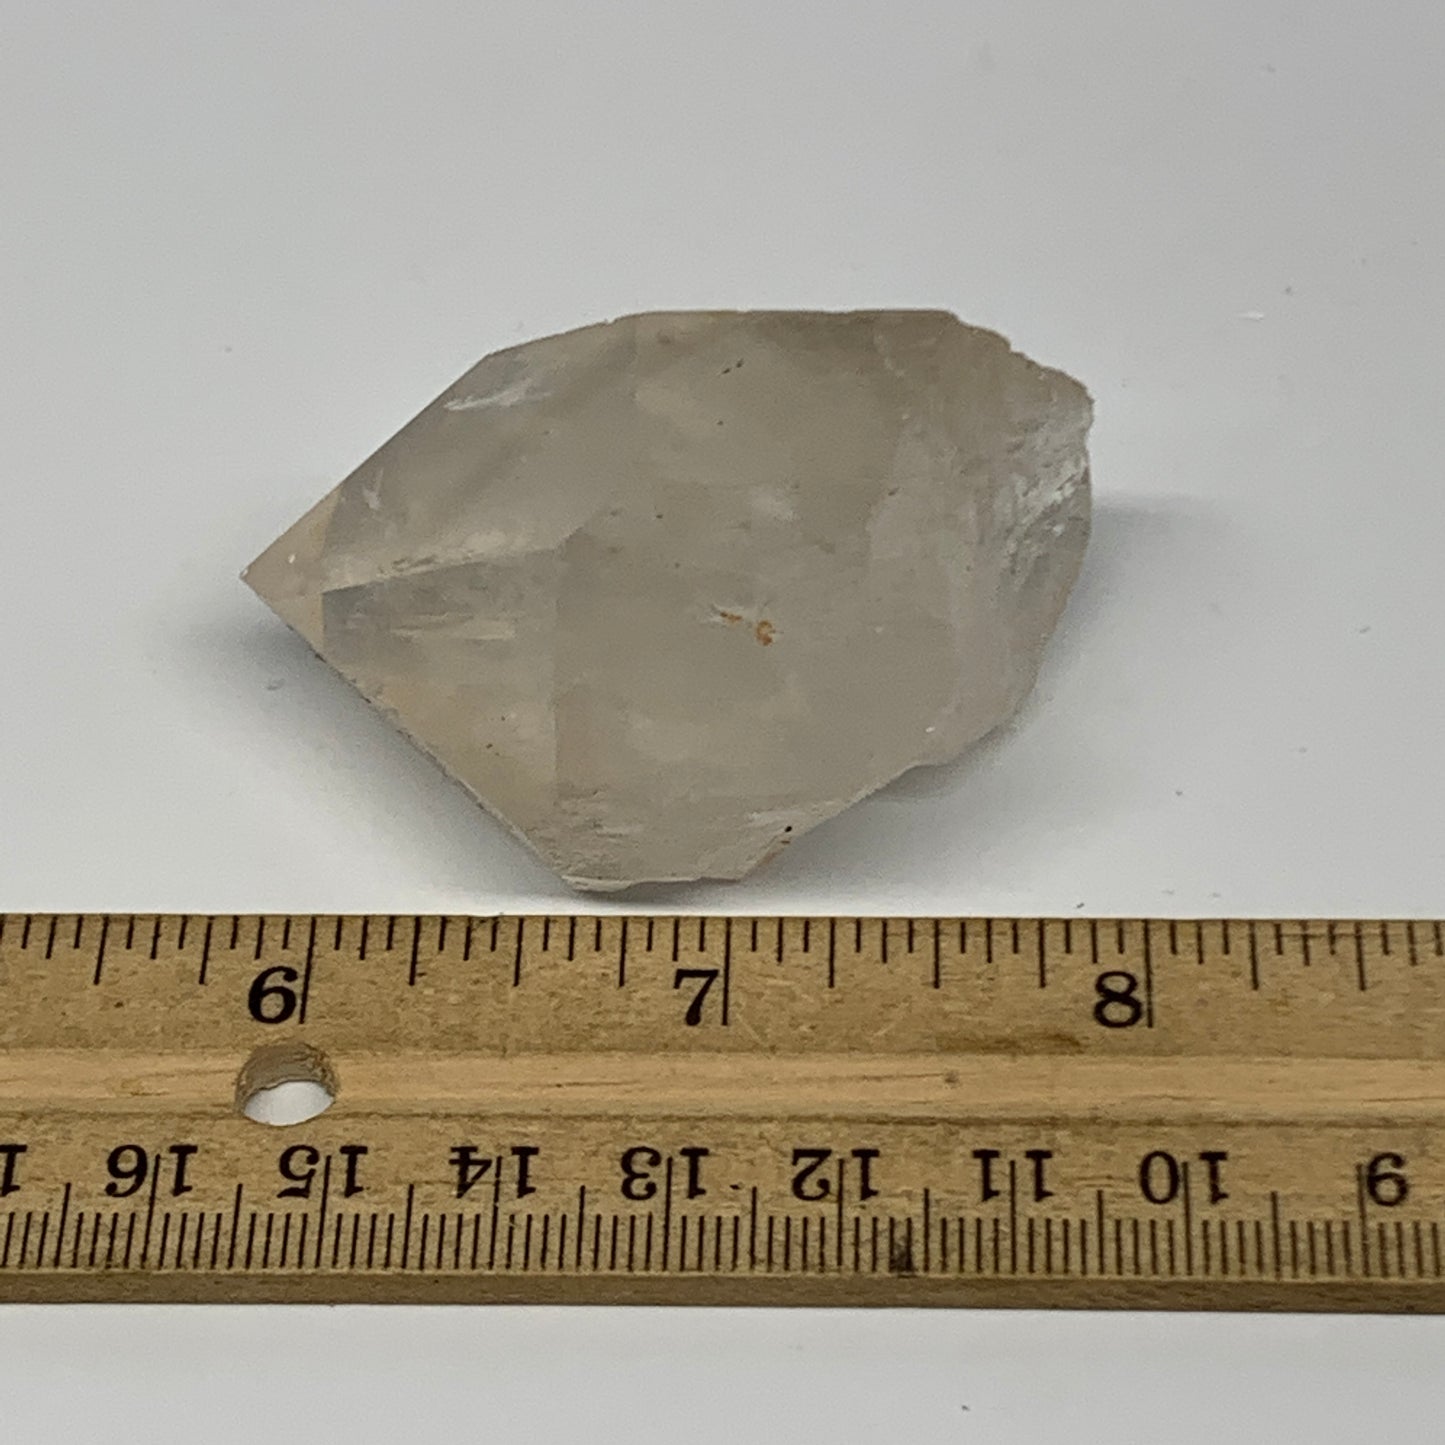 69.3g, 2.2"x1.3"x1.3", Lemurian Quartz Crystal Mineral Specimens @Brazil, B19276